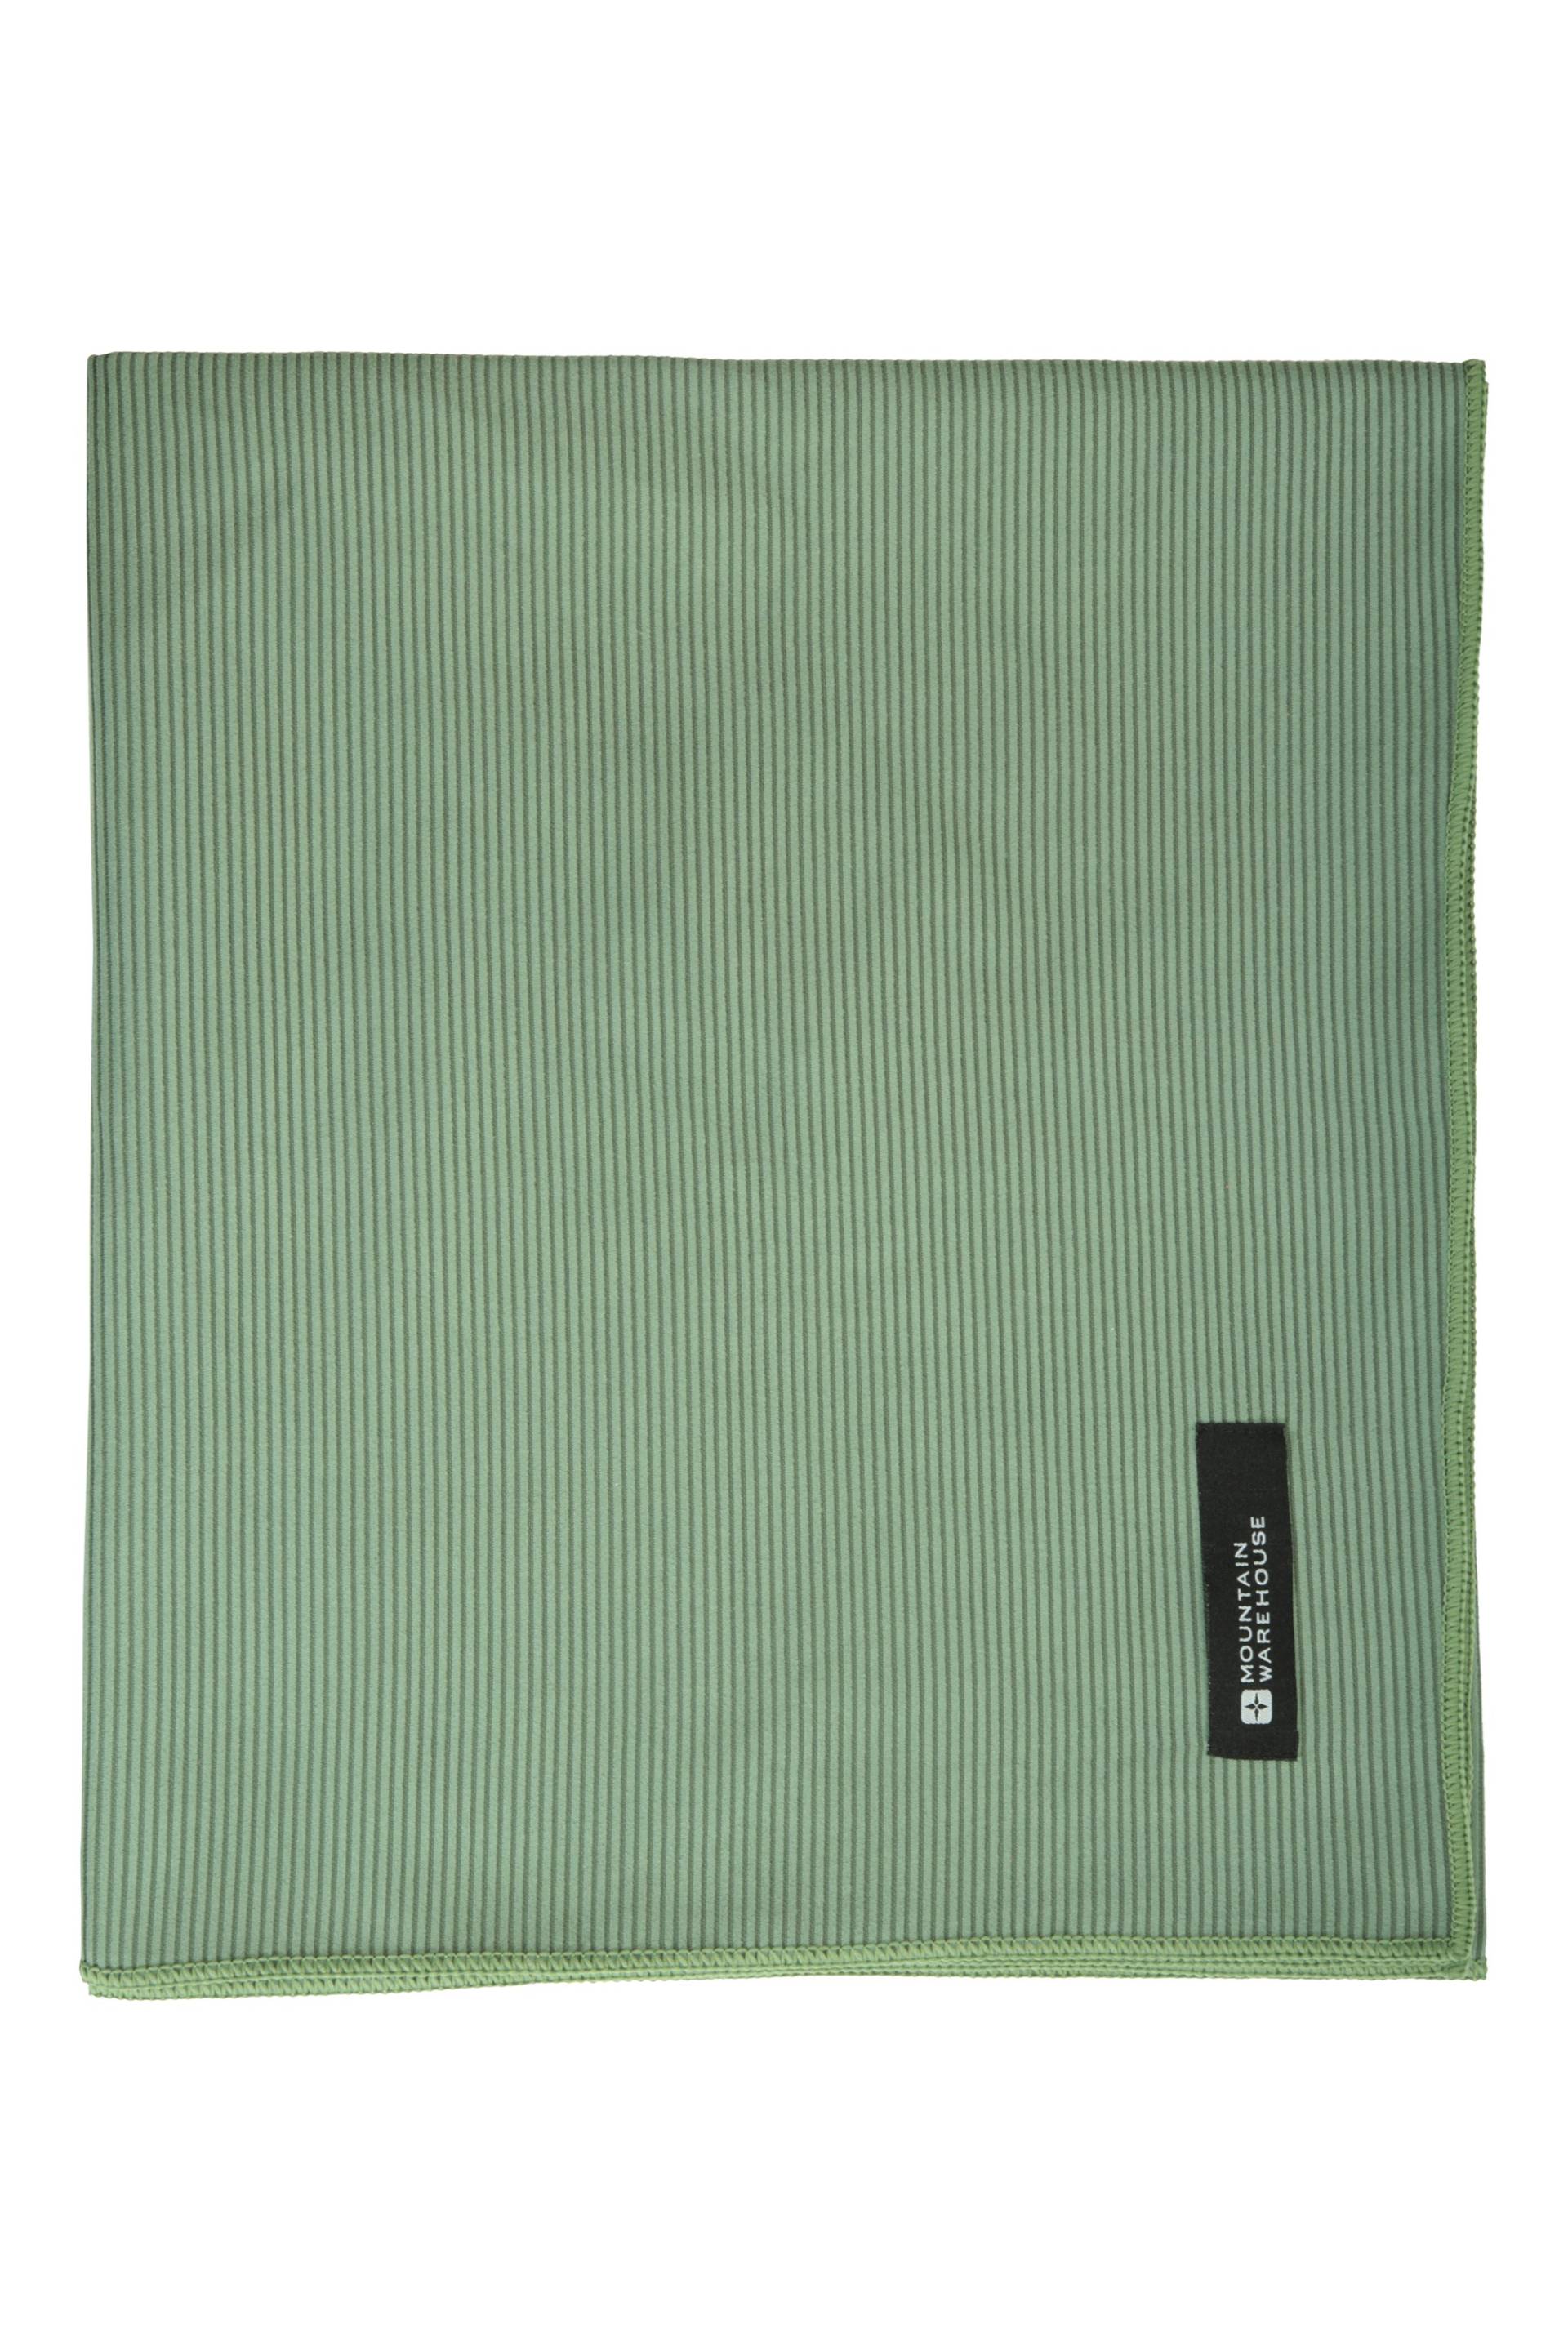 Riesiges Geripptes Handtuch - 150 x 85cm - Khaki von Mountain Warehouse